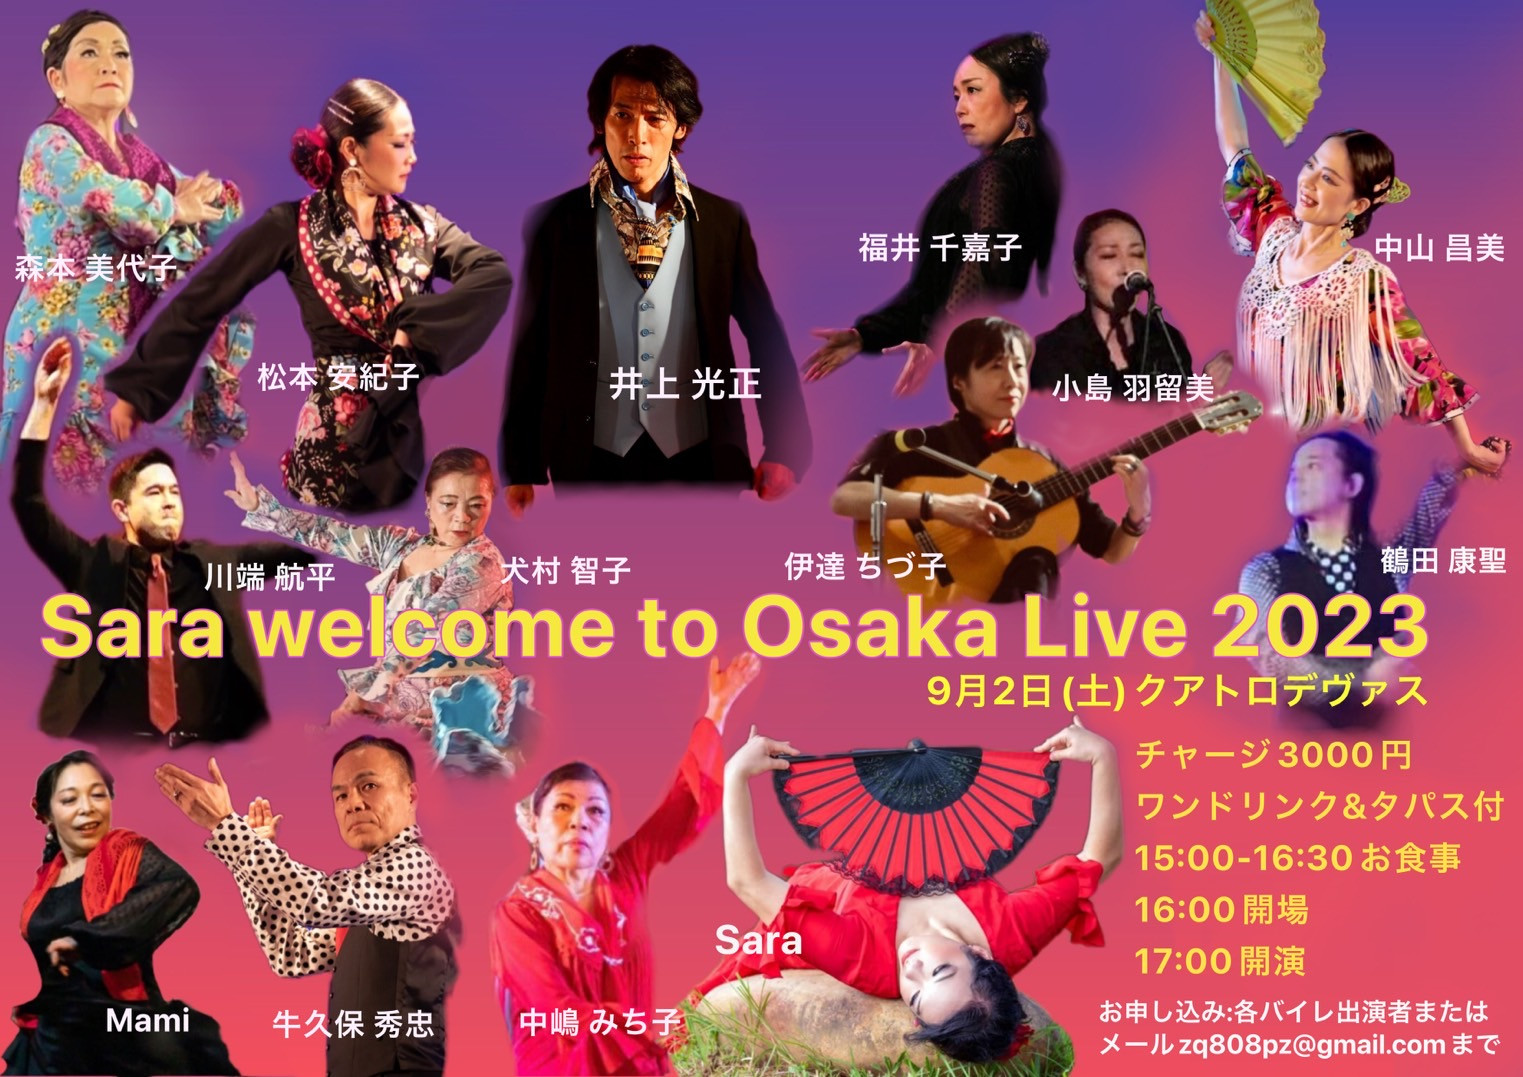 【出演】2023年9月2日(土)「Sara welcome to Osaka Live 2023」に出演いたします。